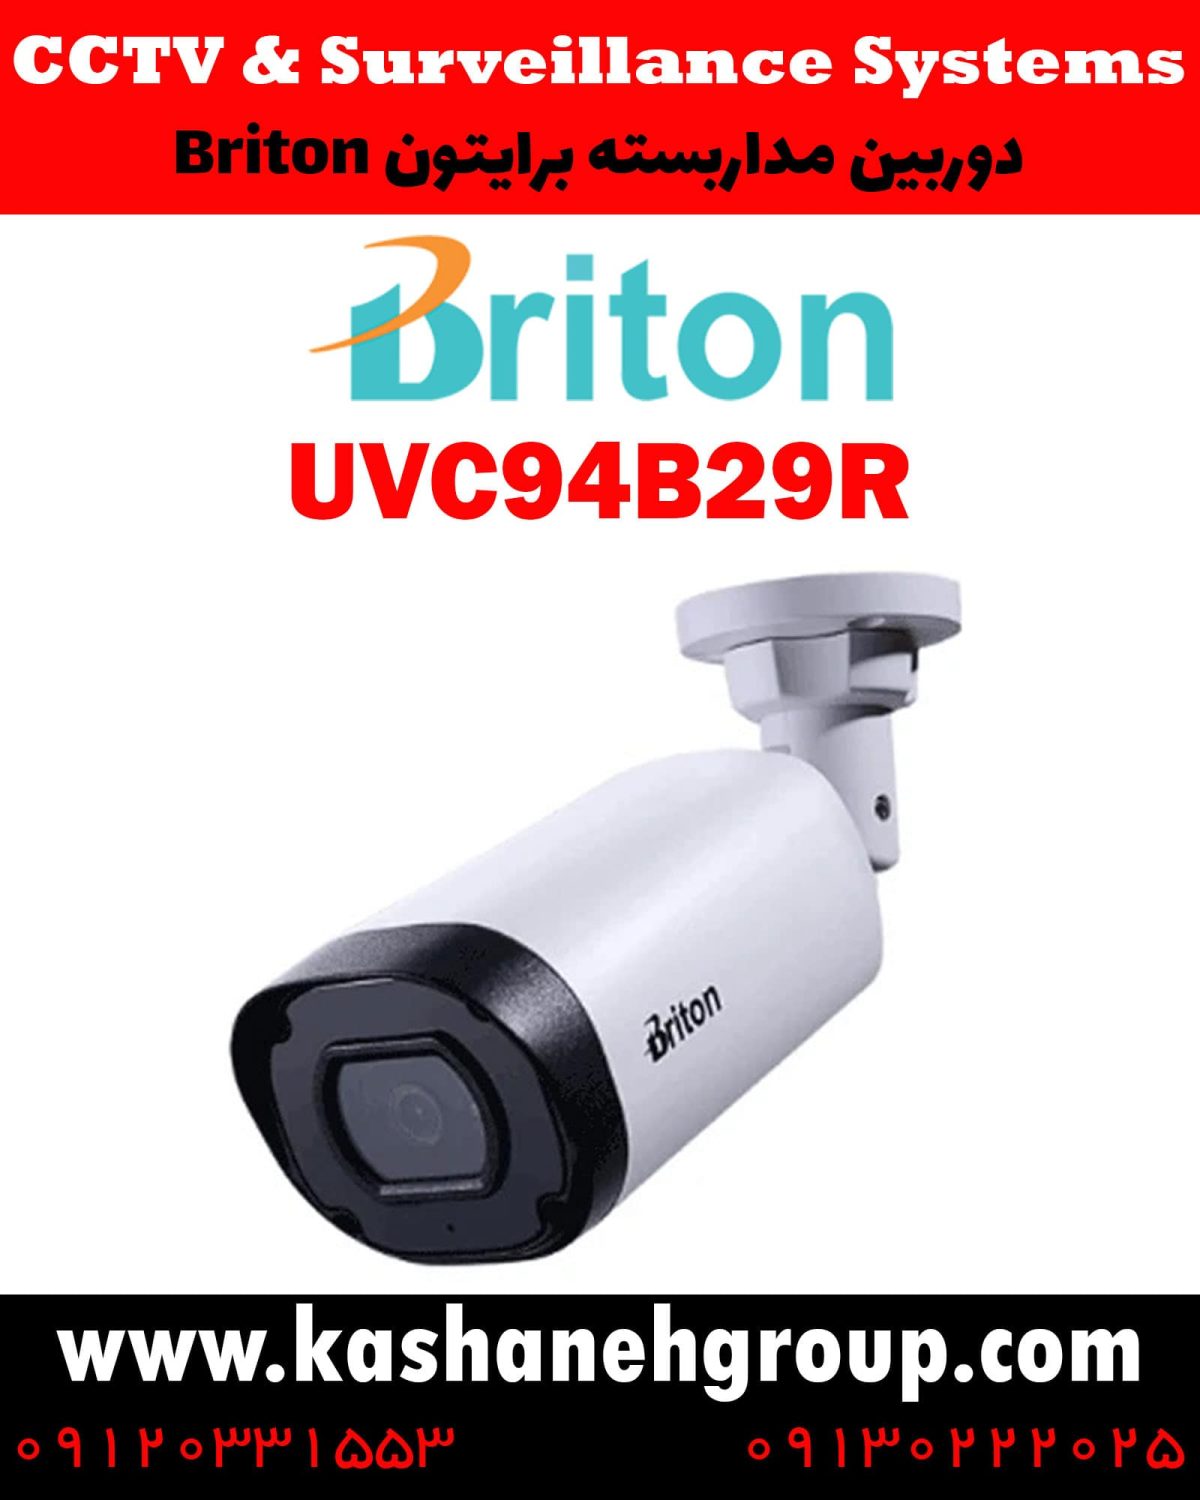 دوربین مداربسته UVC94B29R، دوربین مداربسته برایتون UVC94B29R، دوربین مداربسته Briton UVC94B29R، دوربین برایتون UVC94B29R، قیمت دوربین برایتون، نرم افزار برایتون، تعمیر دوربین برایتون، نمایندگی برایتون، نماینده برایتون، قیمت دوربین برایتون، مشخصات دوربین UVC94B29R، قیمت دوربین برایتون UVC94B29R، قیمت دوربین UVC94B29R برایتون، پک دوربین برایتون، پک دوربین مداربسته برایتون، دوربین Briton، دوربین مداربسته برایتون Briton UVC94B29R ، نماینده دوربین Briton، نمایندگی دوربین Briton، نرم افزار موبایل دوربین مداربسته Briton، دوربین مداربسته، قیمت دوربین مداربسته، دوربین مدار بسته، خرید دوربین مداربسته، کابل دوربین مداربسته، پک دوربین مداربسته،